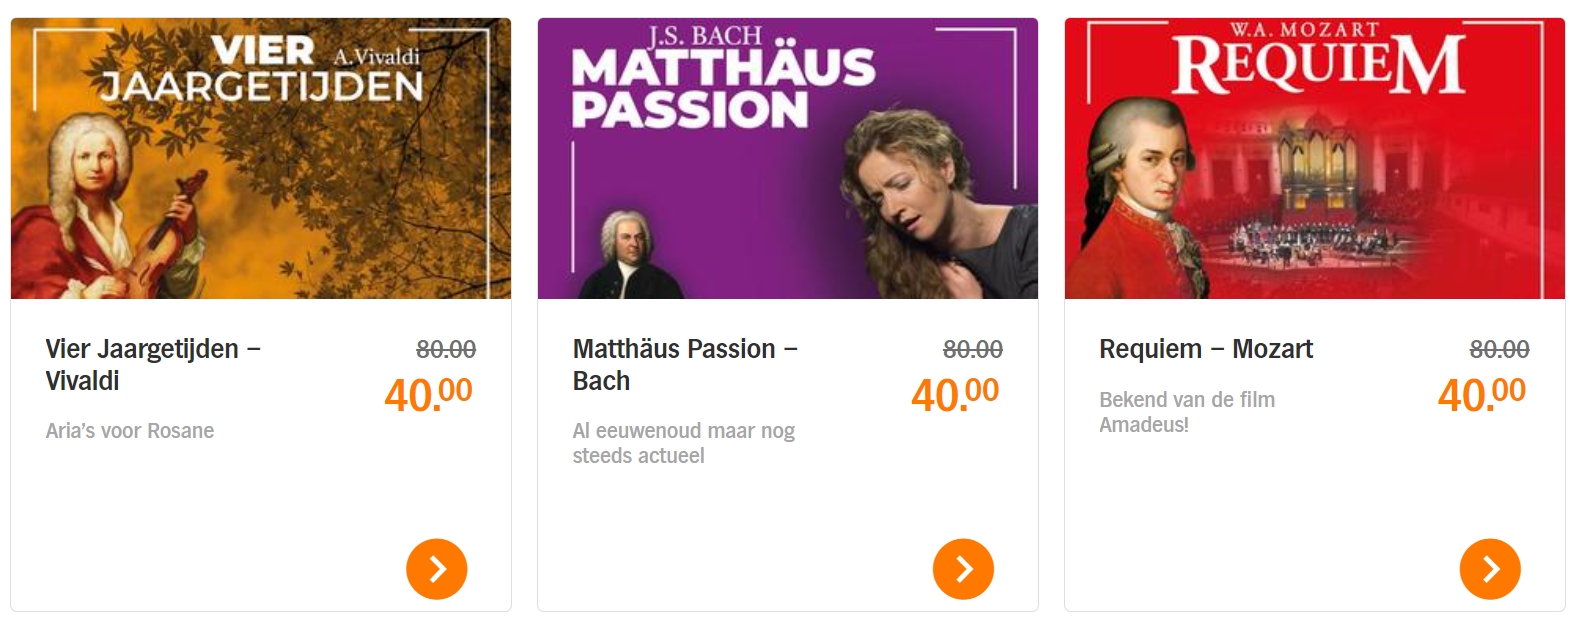 古典音乐会门票好价！每场40欧元，下单即送价值70欧元礼品包